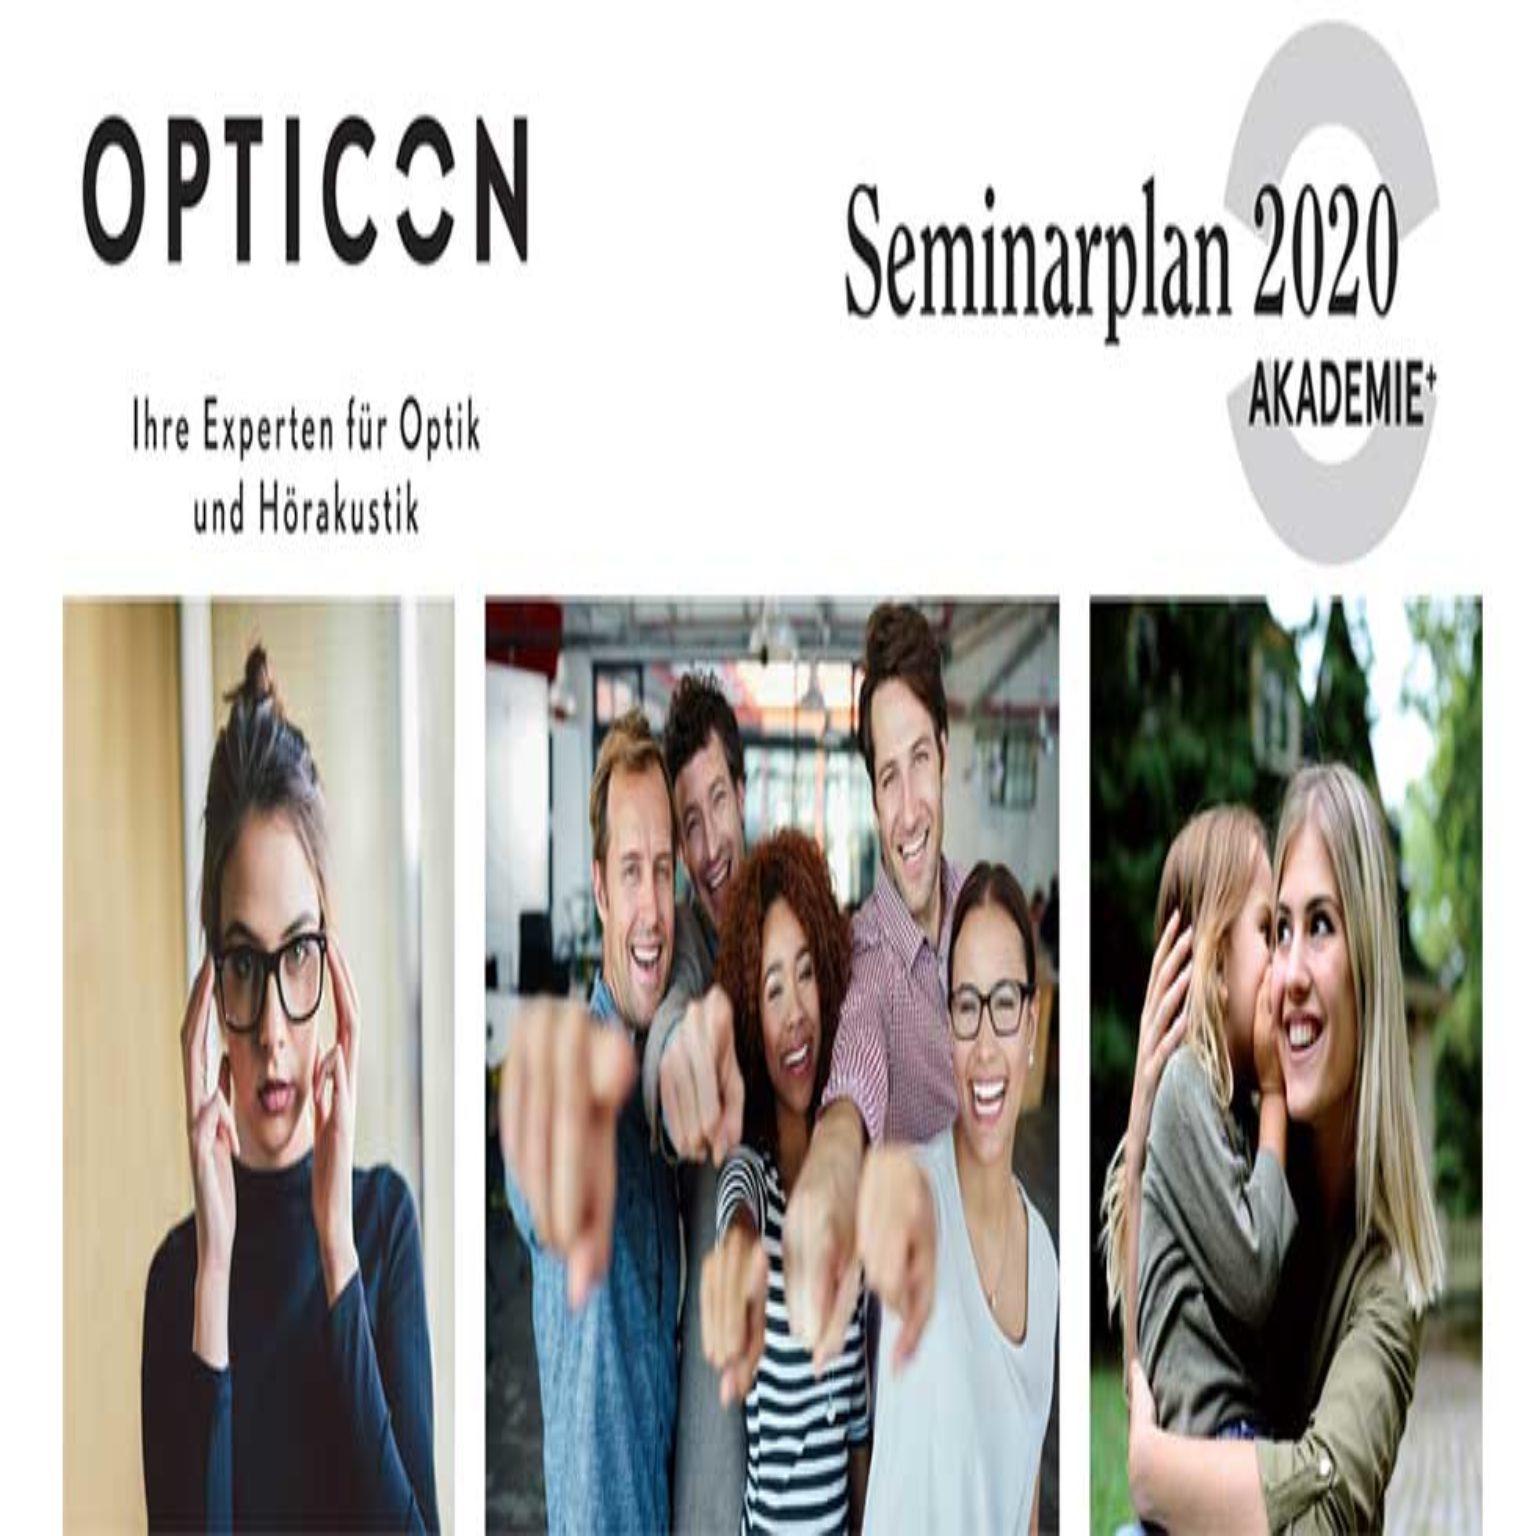 Neuer Opticon Seminarplan: erstes Halbjahr 2020